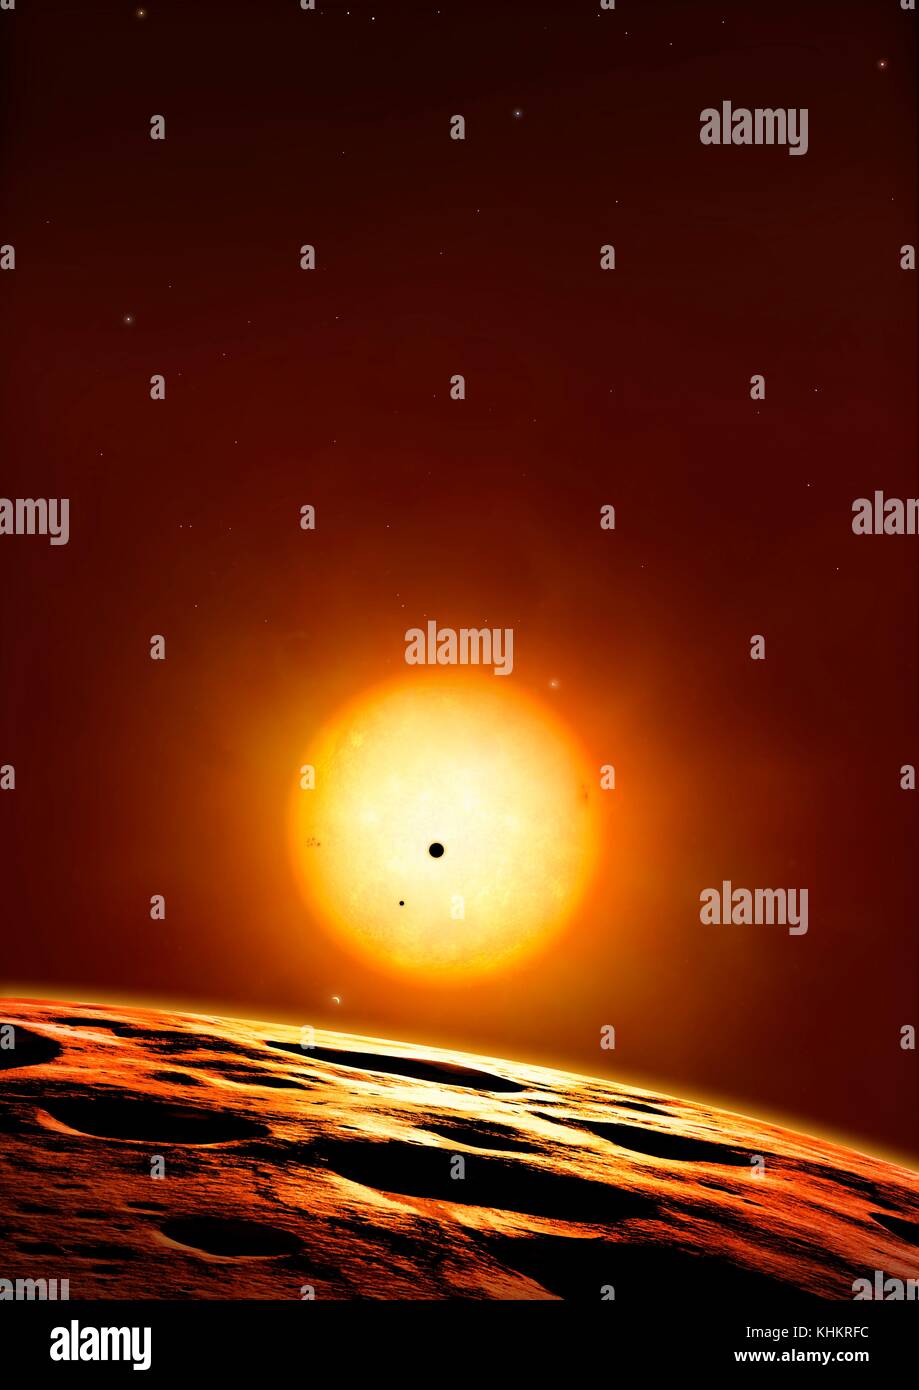 Kepler 444 System von Planeten, Illustration. Kepler 444 ist ein Alter Stern, geschätzt auf rund 11.2 Milliarden Jahre alt sein, mehr als zweimal das Alter der Sonne. Es ist 117 Lichtjahre von der Erde entfernt im Sternbild Lyra. Im Jahr 2015, Astronomen bestätigt, dass dieses coole Star (5000 Grad Kelvin) ist Gastgeber für mindestens fünf Gesteinsplaneten, variiert von 0,4 bis 0,7-fache des Radius der Erde, oder zwischen den Größen des Merkur und Mars. Jedoch sind die Planeten unwahrscheinlich Aufenthaltsorte für das Leben, da sie alle in sehr engen Bahnen gepresst sind. Stockfoto